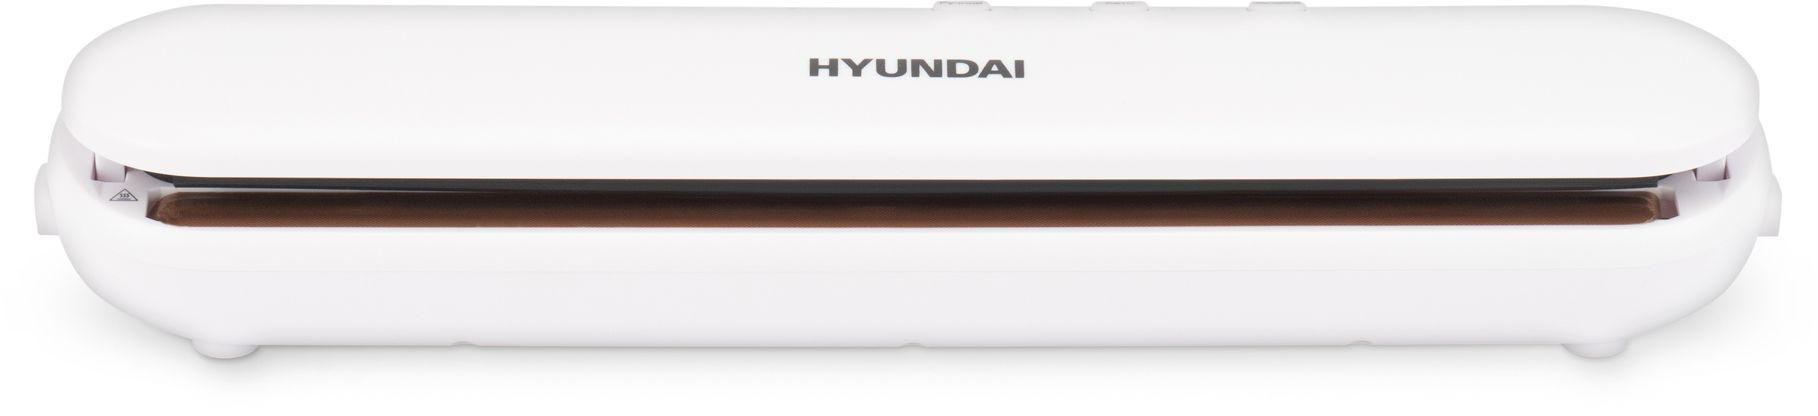 Вакуумный упаковщик Hyundai HY-VA1001 90Вт белый